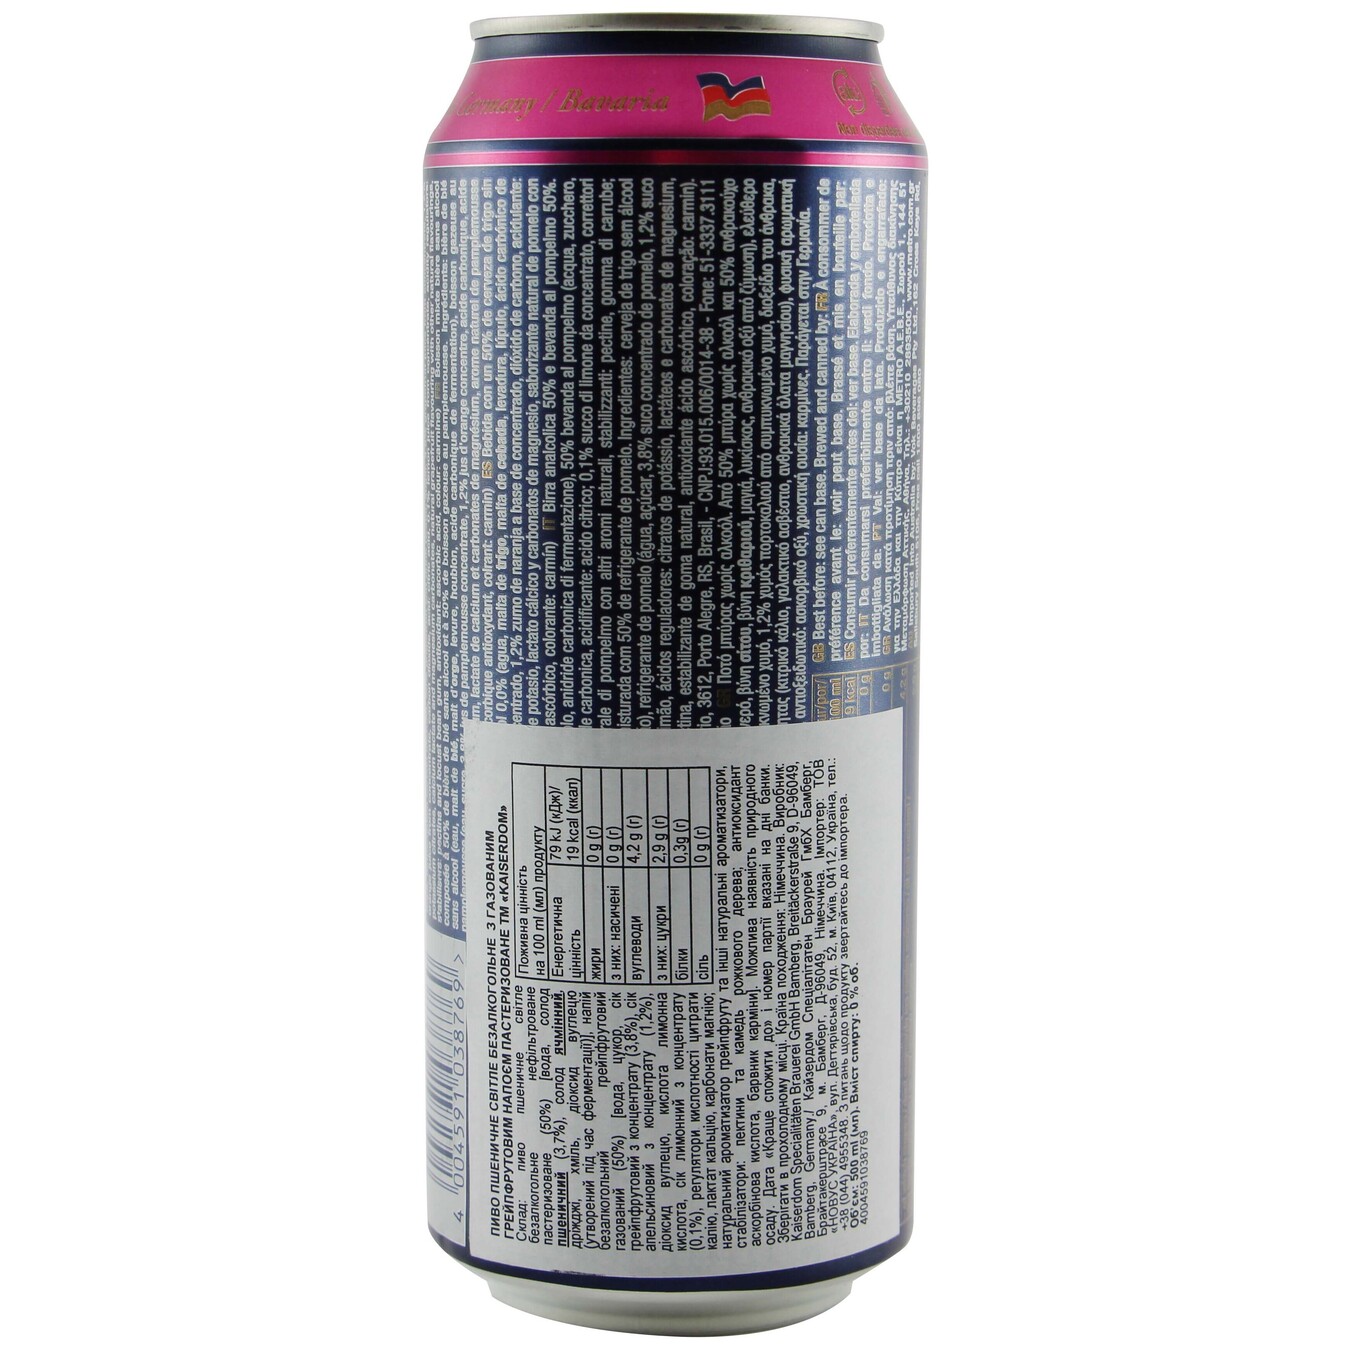 Пиво Kaiserdom Pink Grapefruit безалкогольное ж/б 0,5л 2